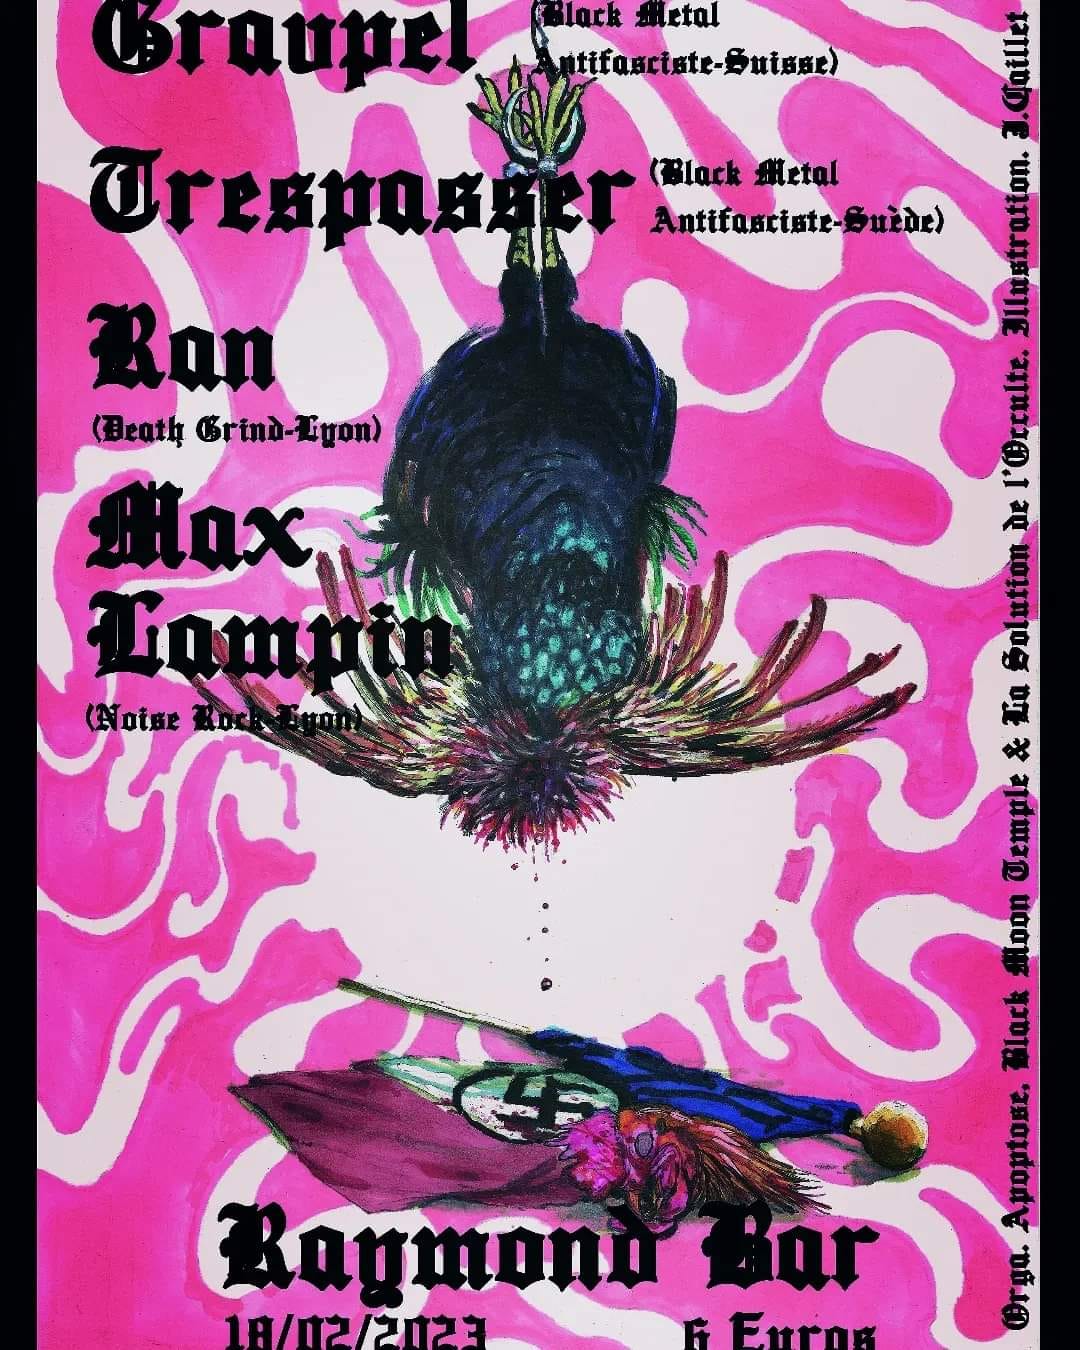 Gravpel // Trespasser // Max Lampin